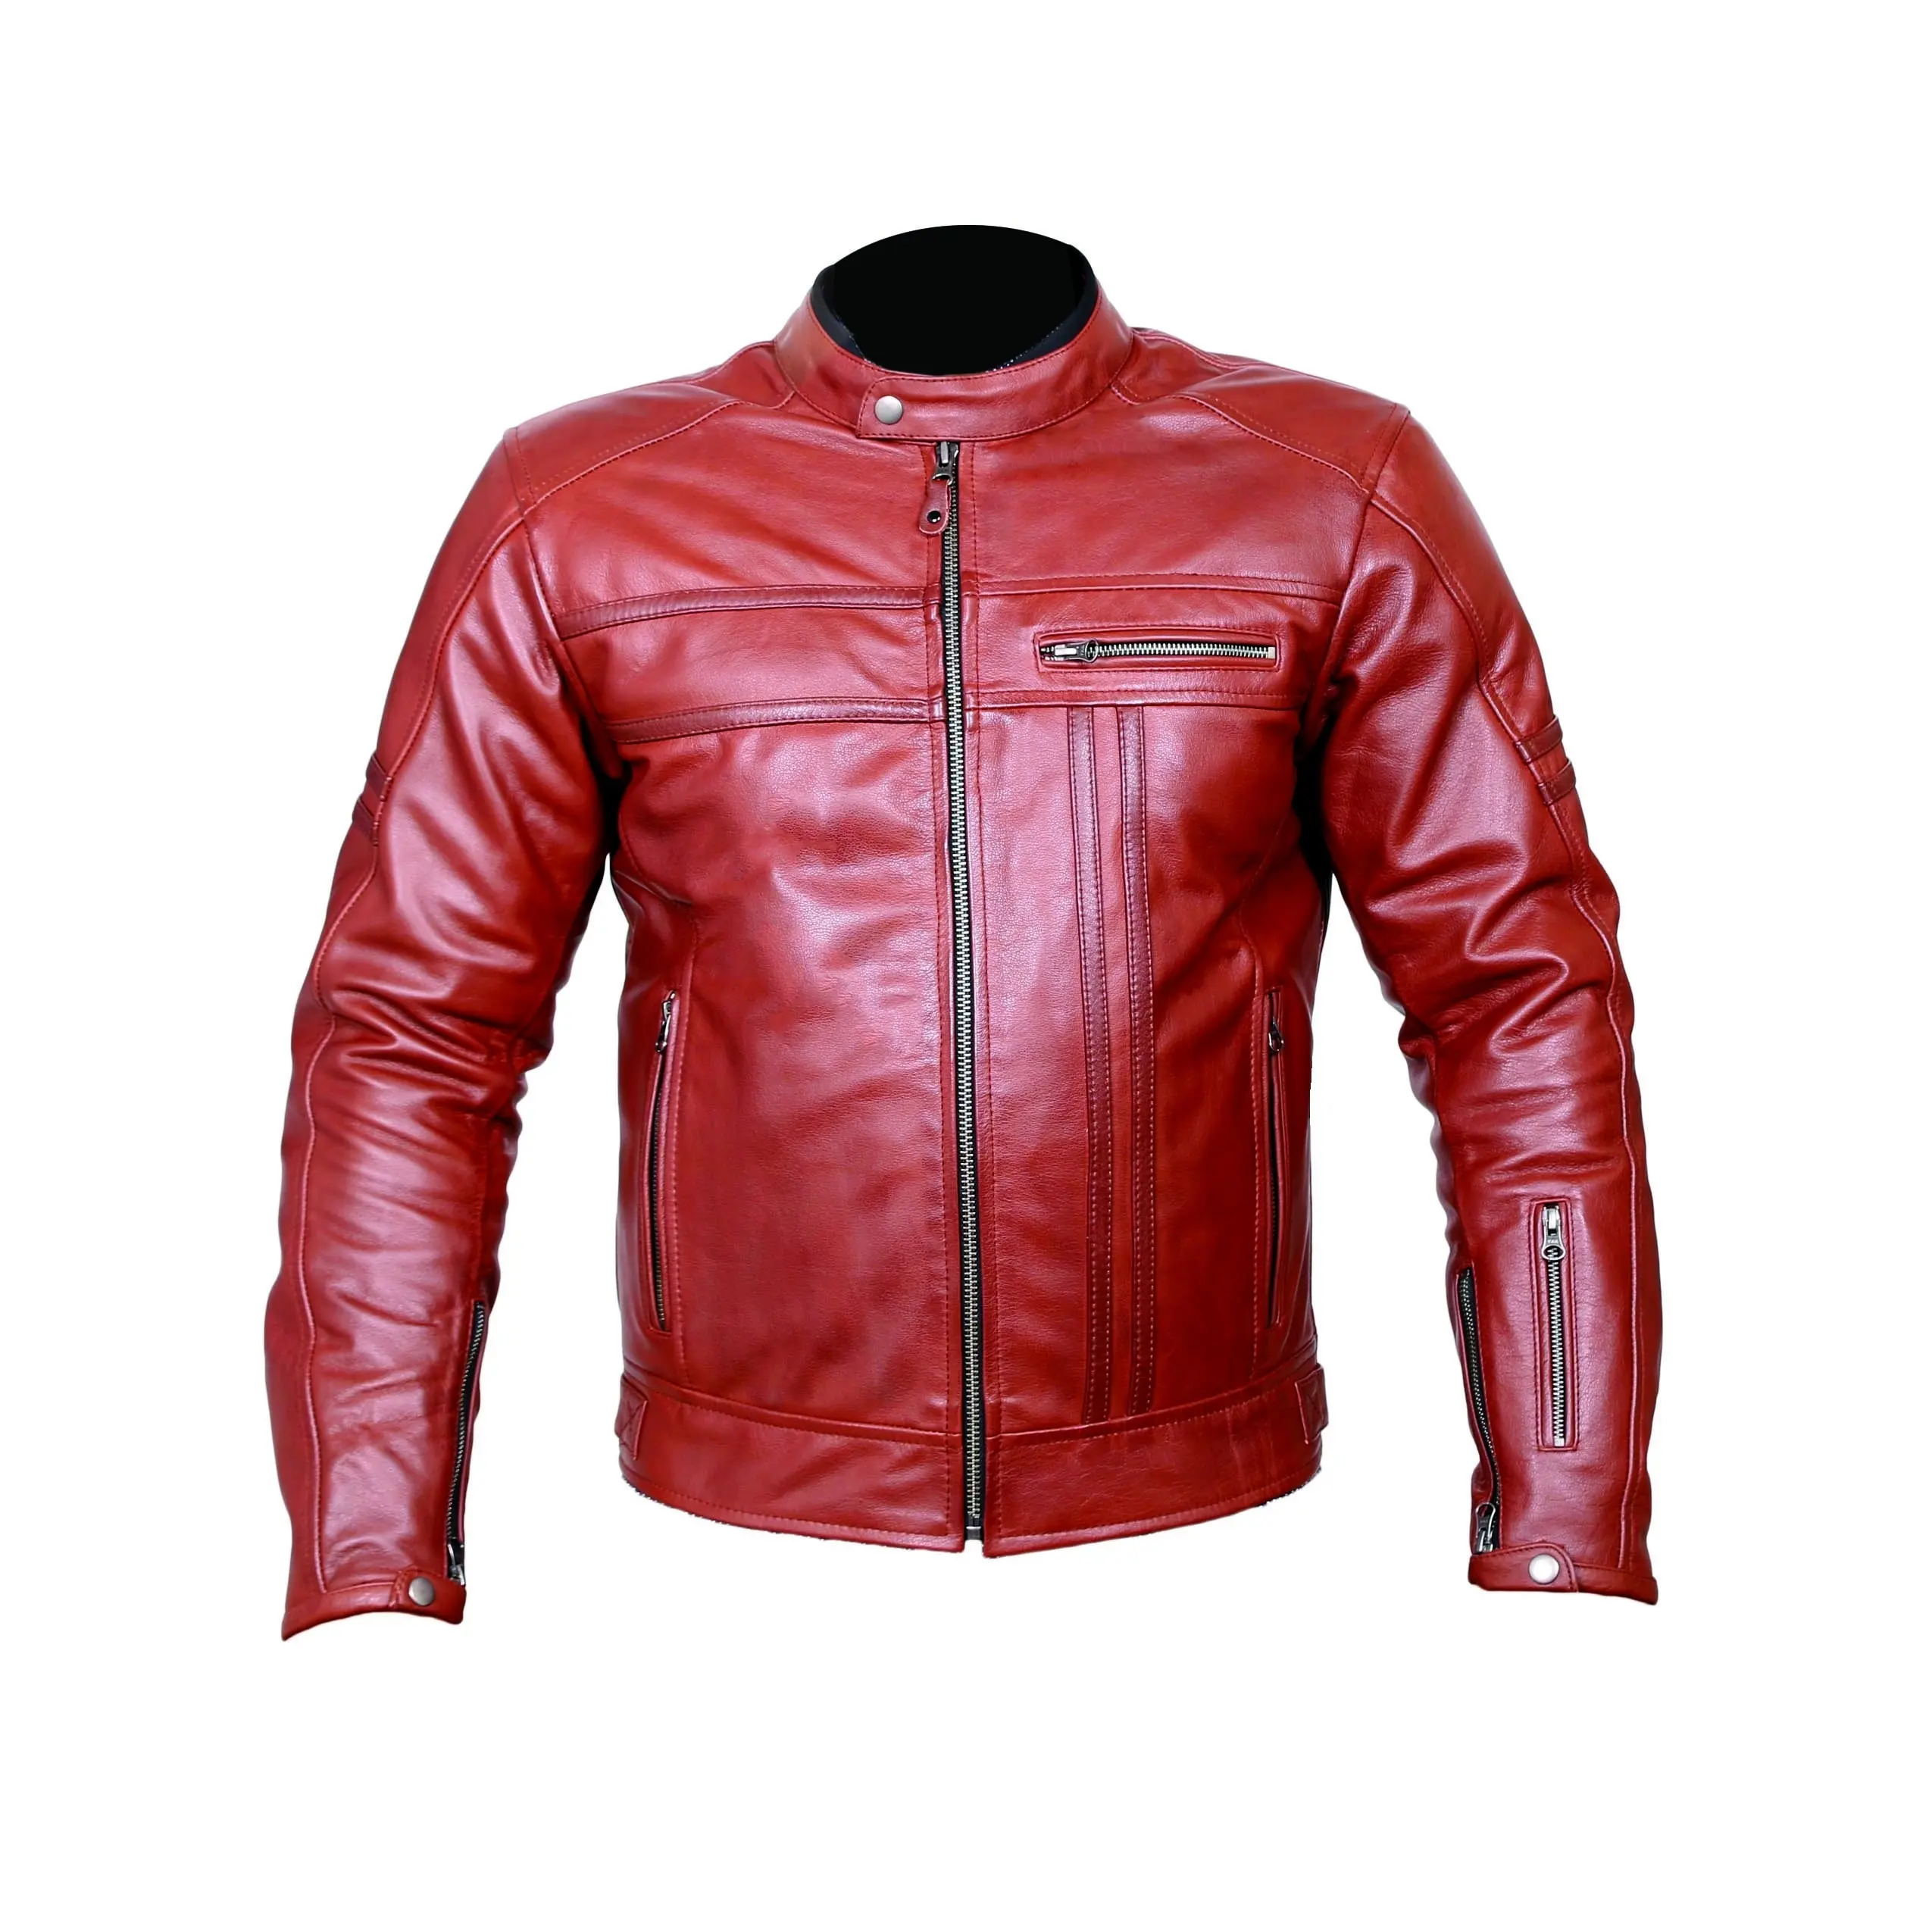 Rote Leder-Jungen-Motorrad-Rennjacke 100 % Original-Rindfell Anilin-Leder für Motorrad- und Motorrad-Kreuzen und Reiten